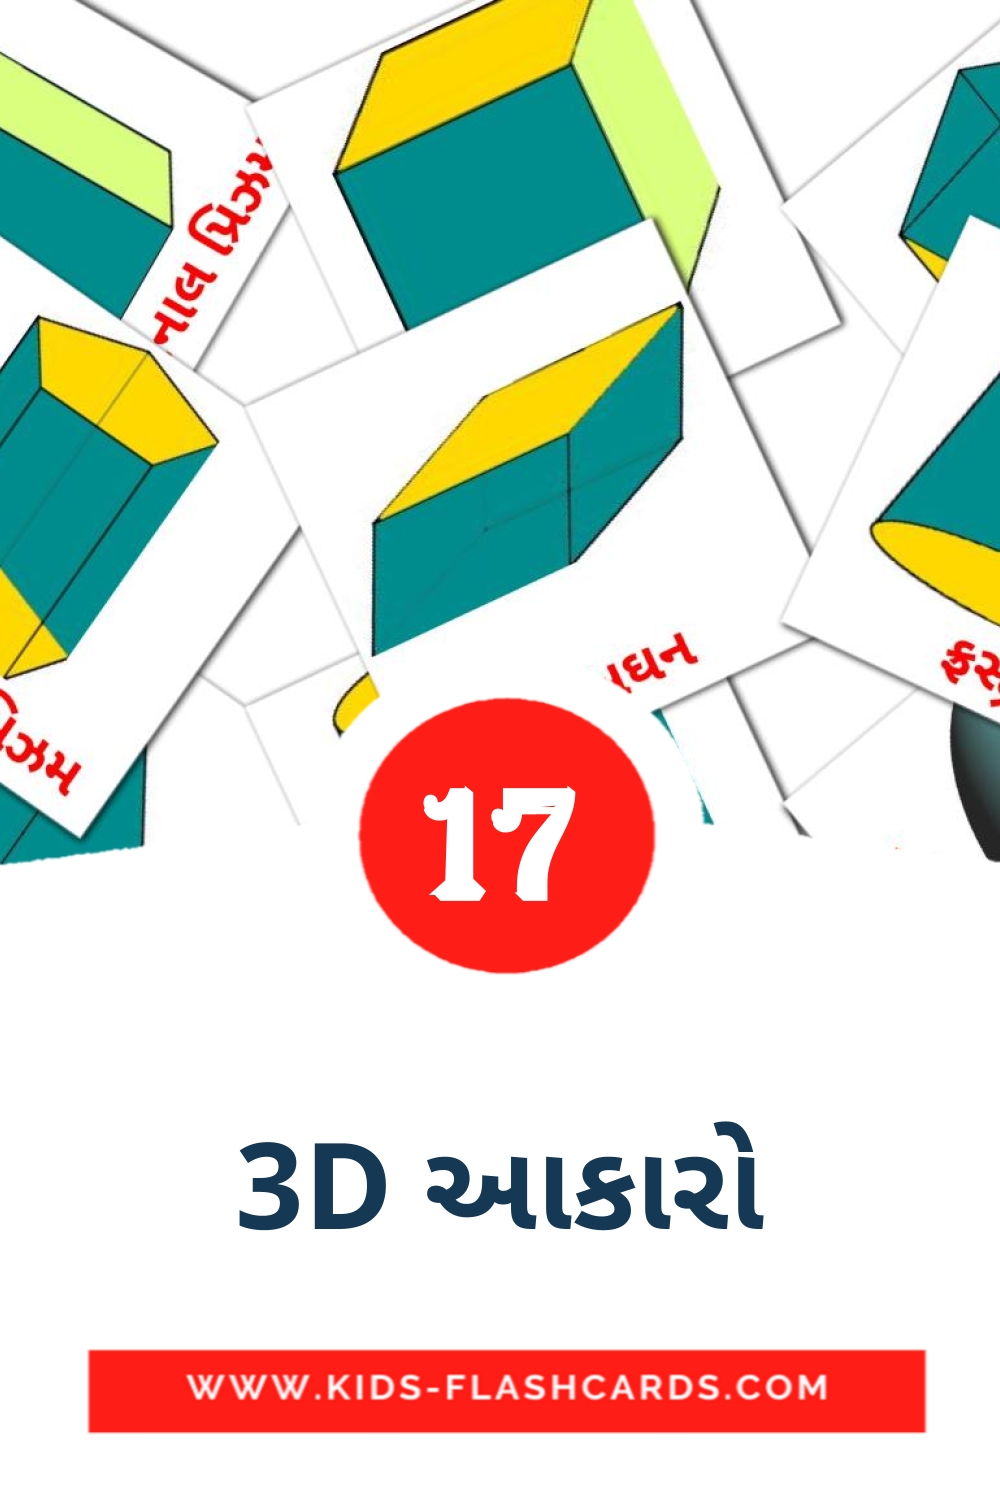 17 Cartões com Imagens de 3D આકારો para Jardim de Infância em gujarati